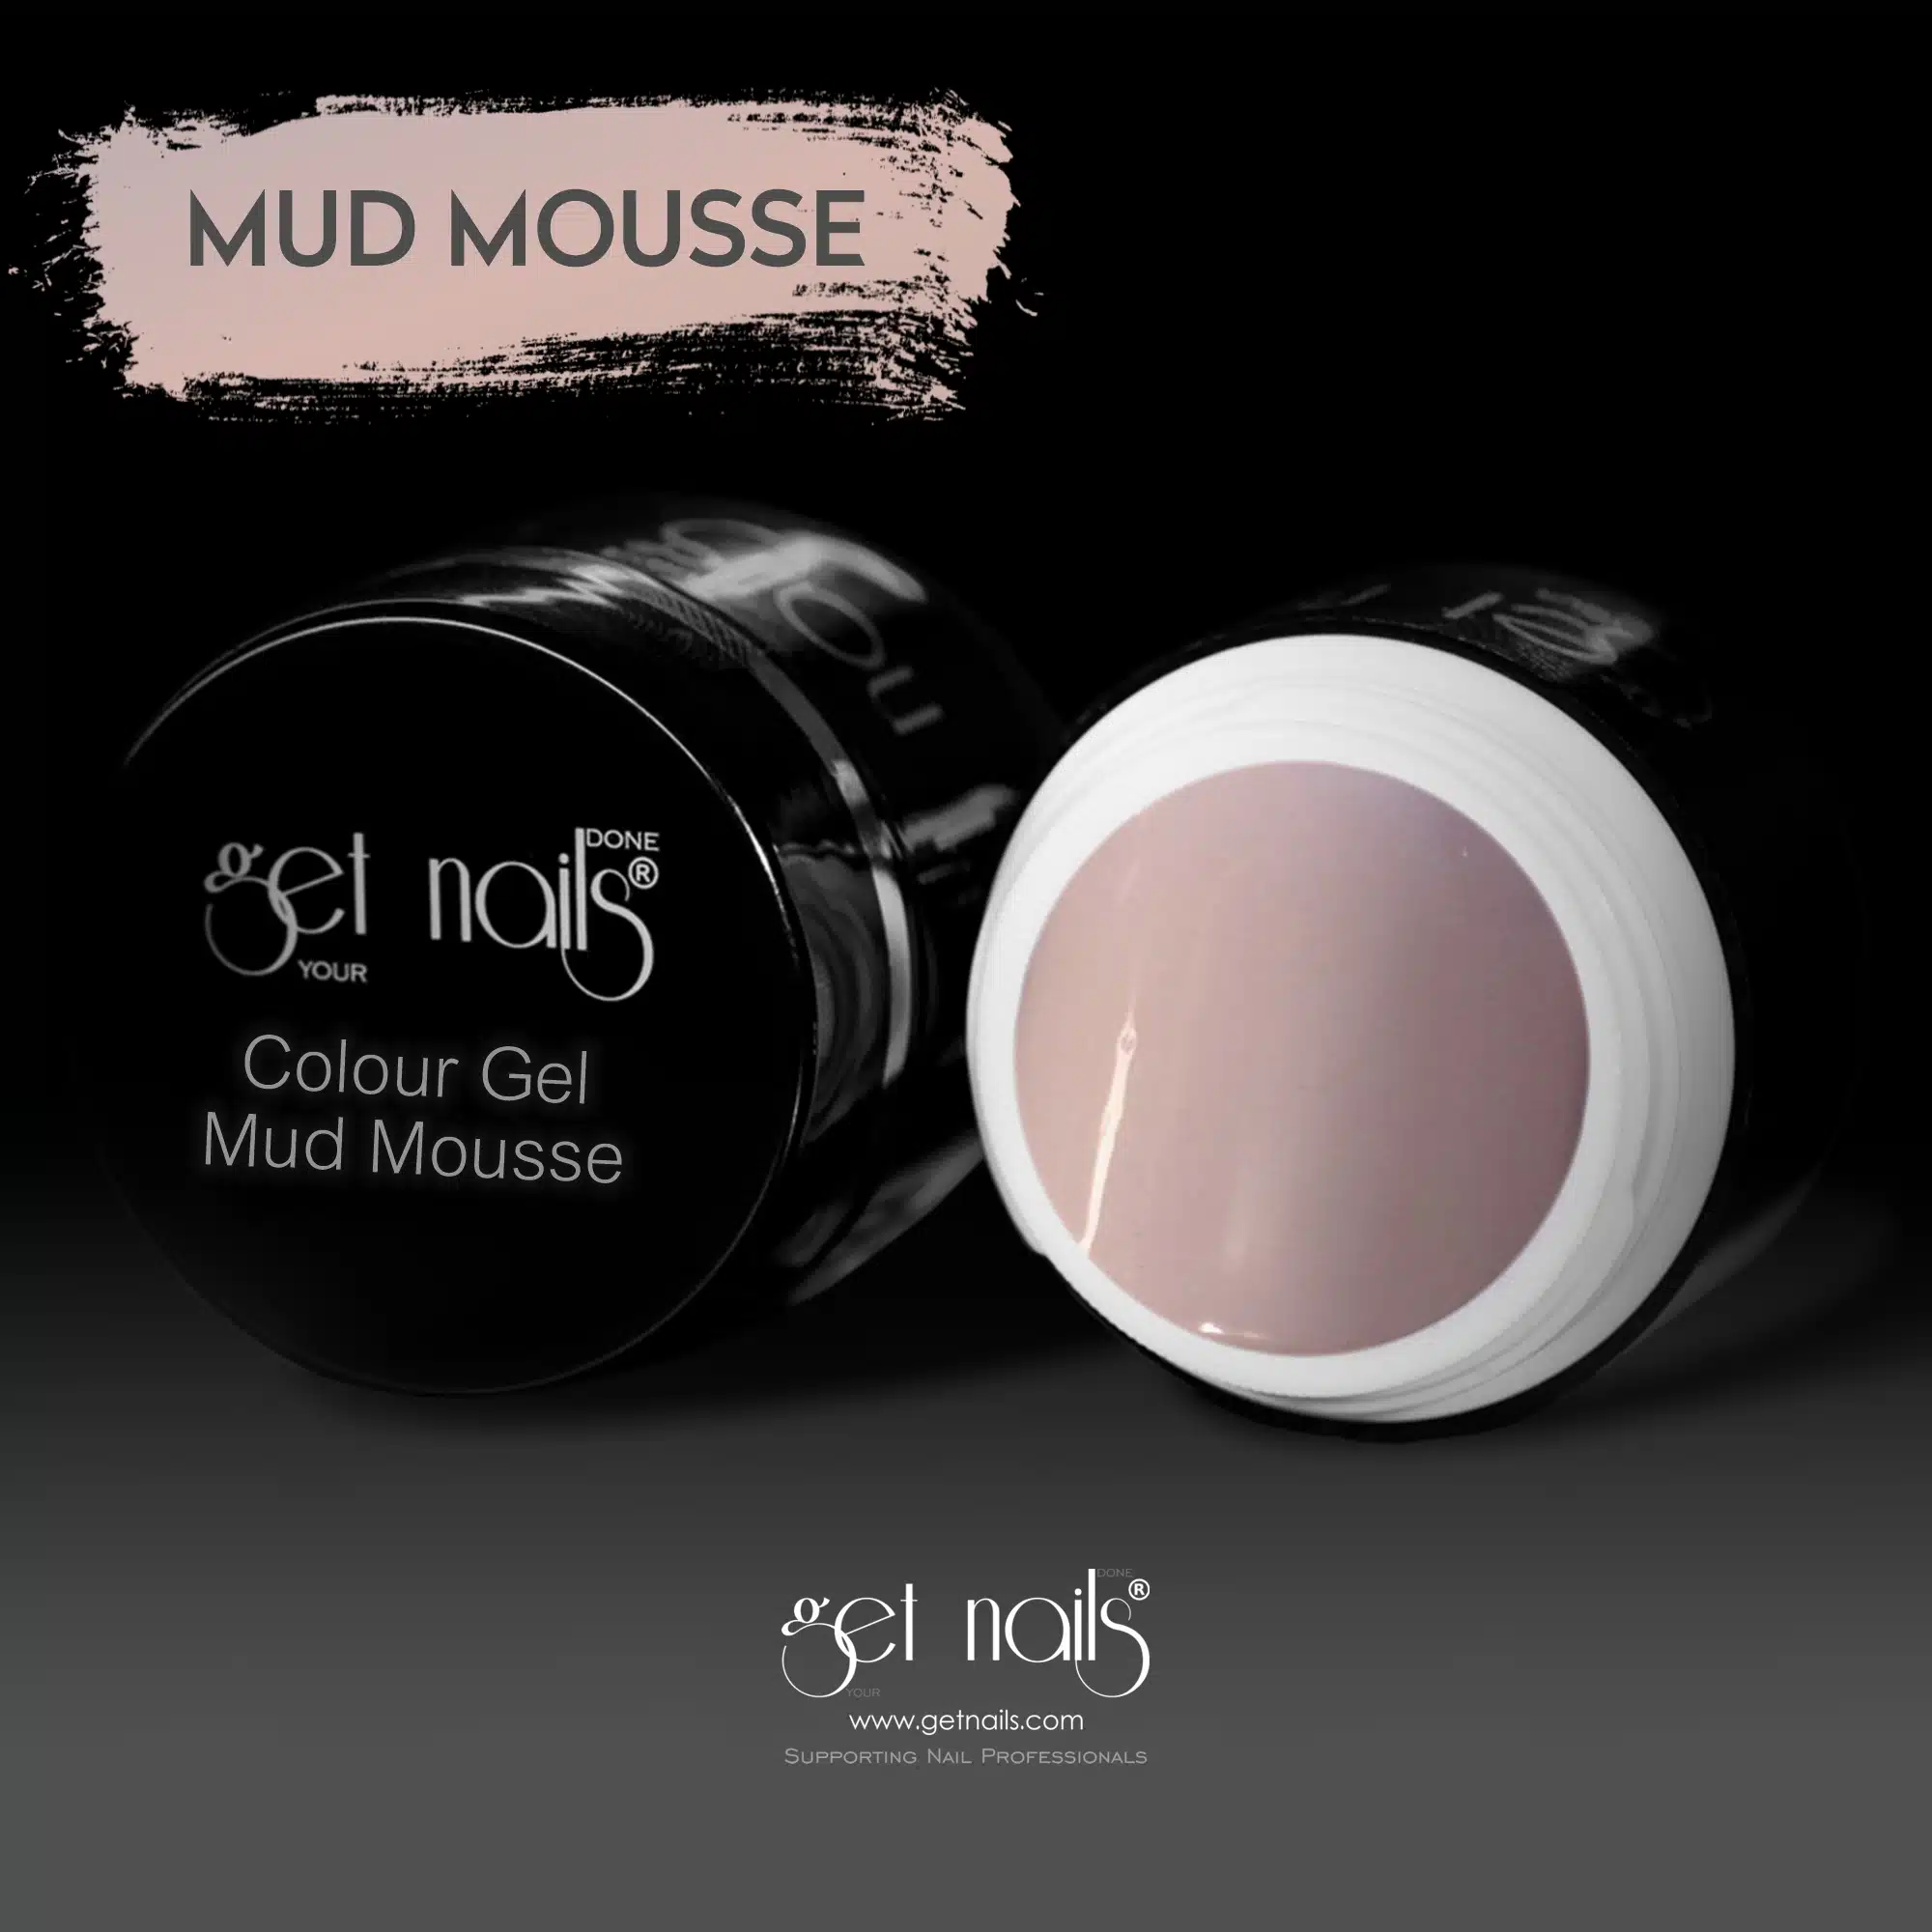 Get Nails Austria - Color Gel Mud Mousse 5g